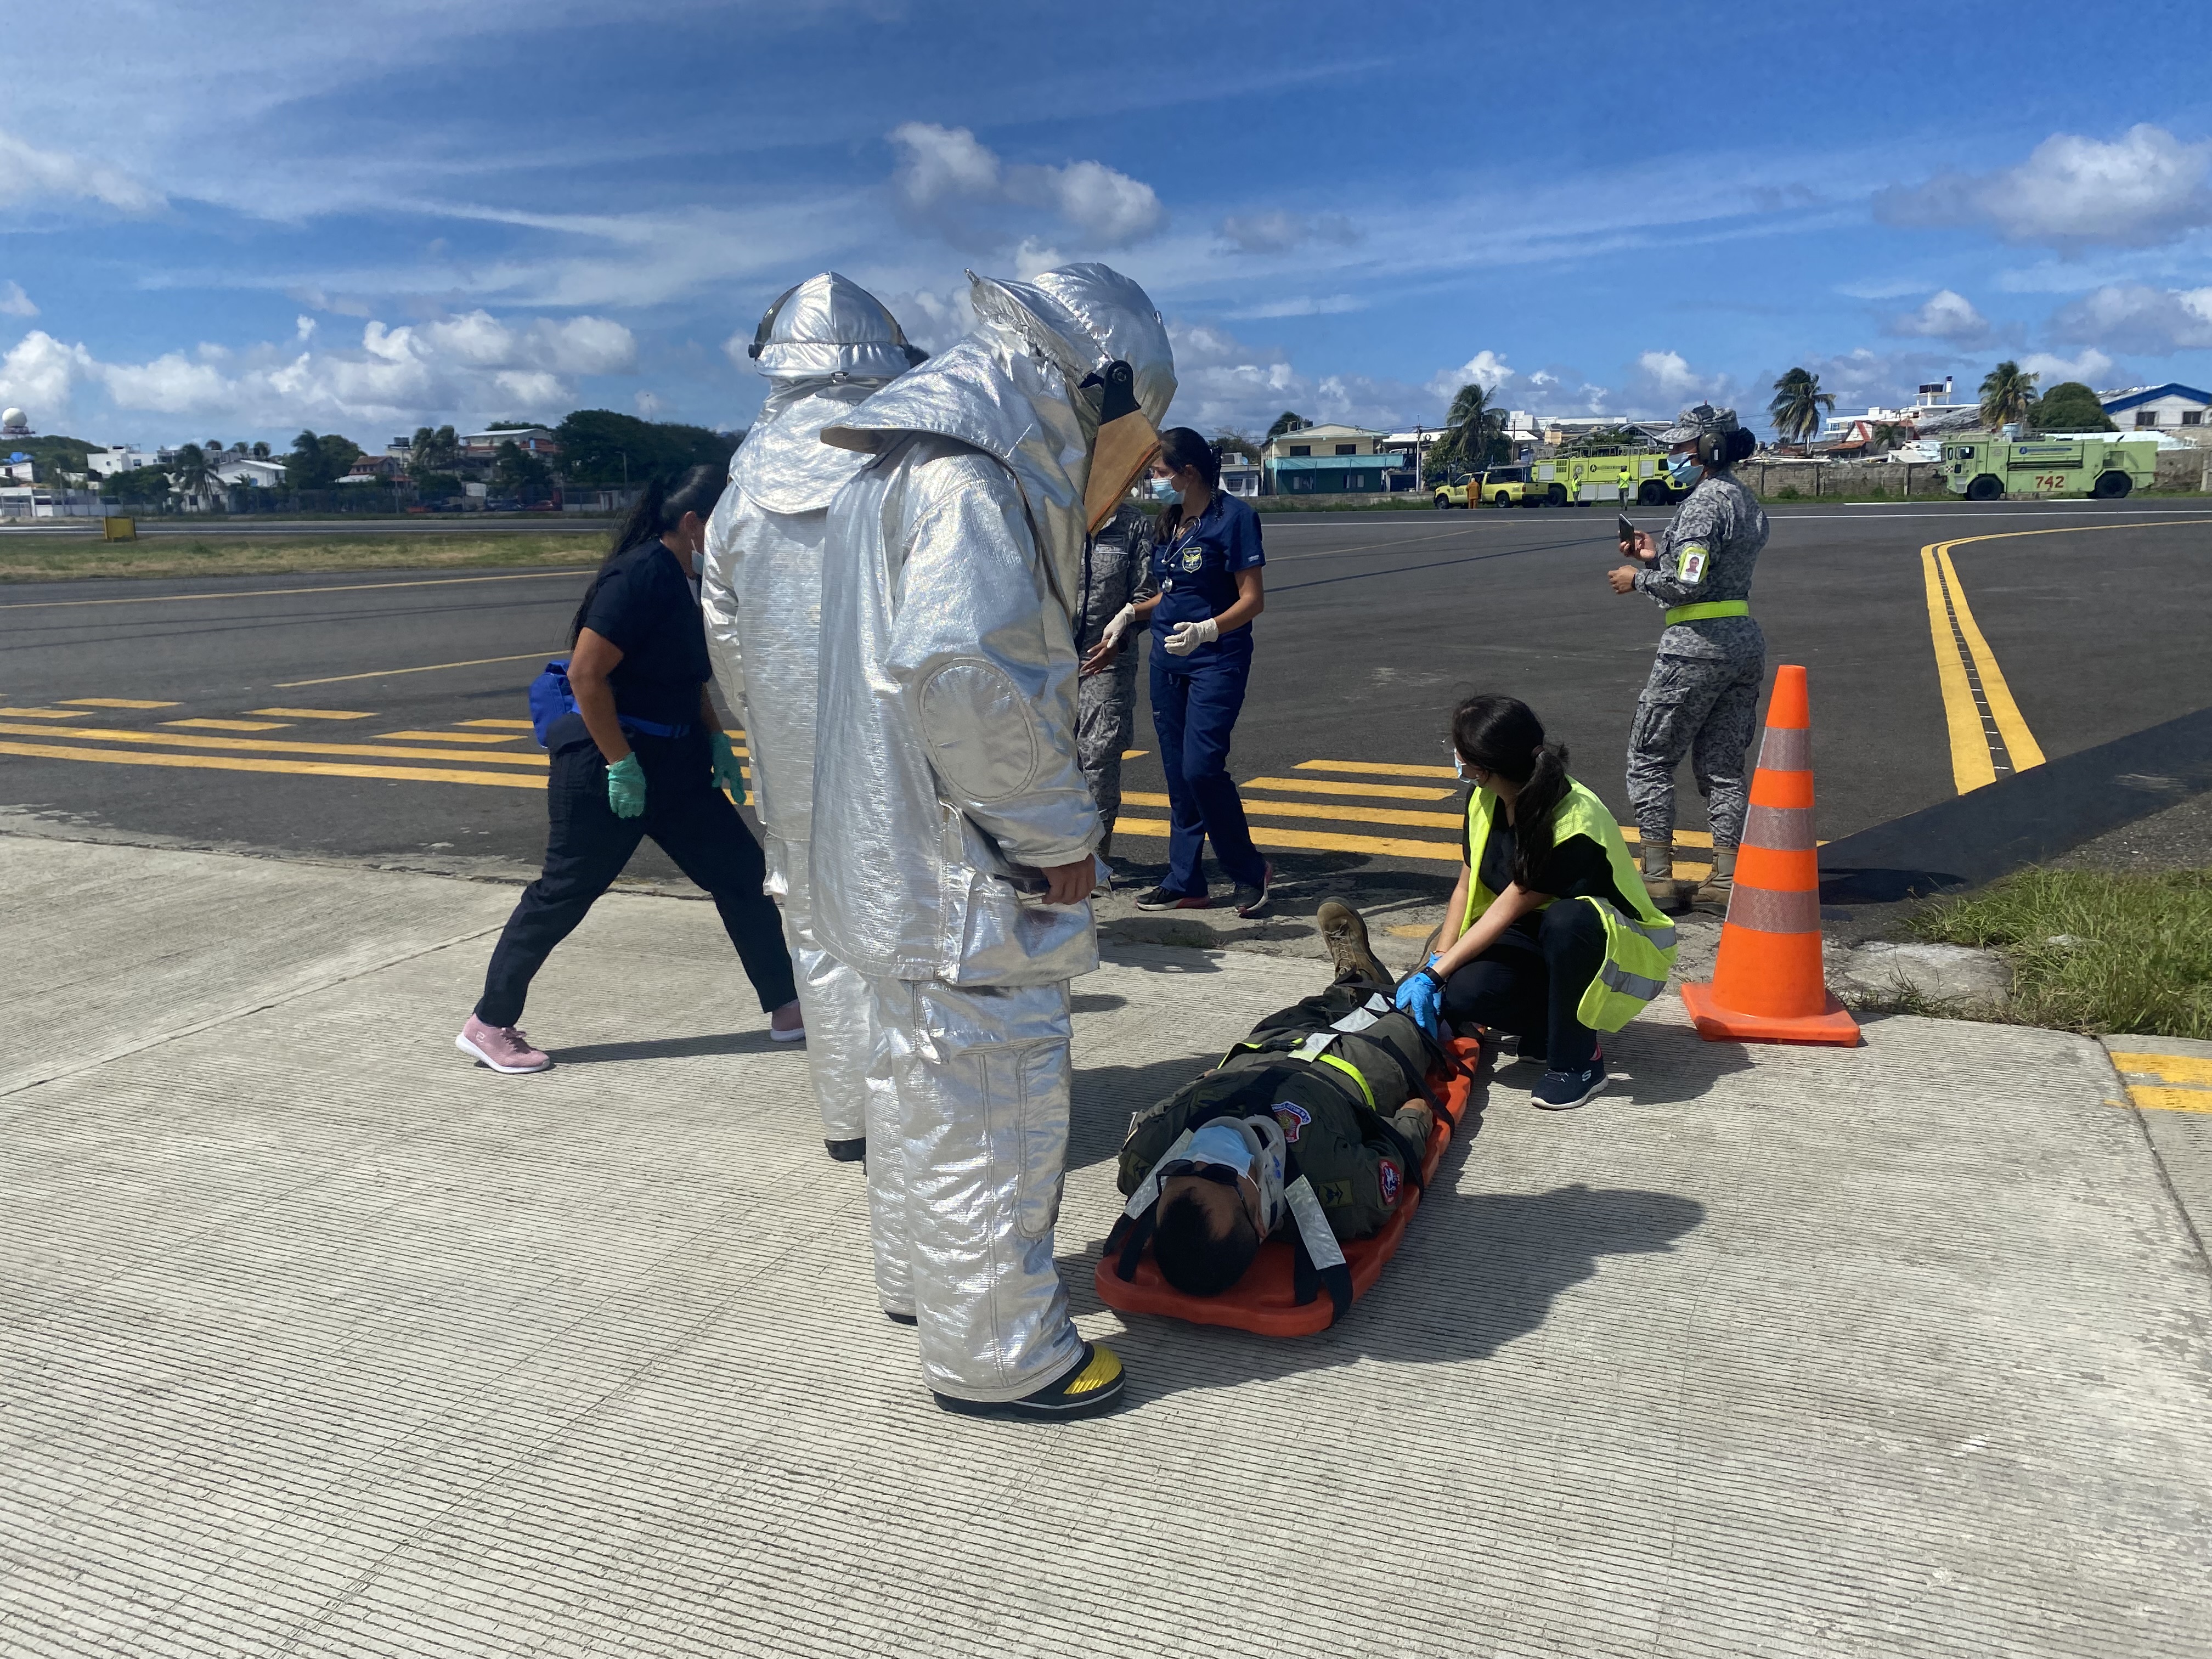 GACAR realiza simulacro de accidente aéreo en el aeropuerto Gustavo Rojas Pinilla.